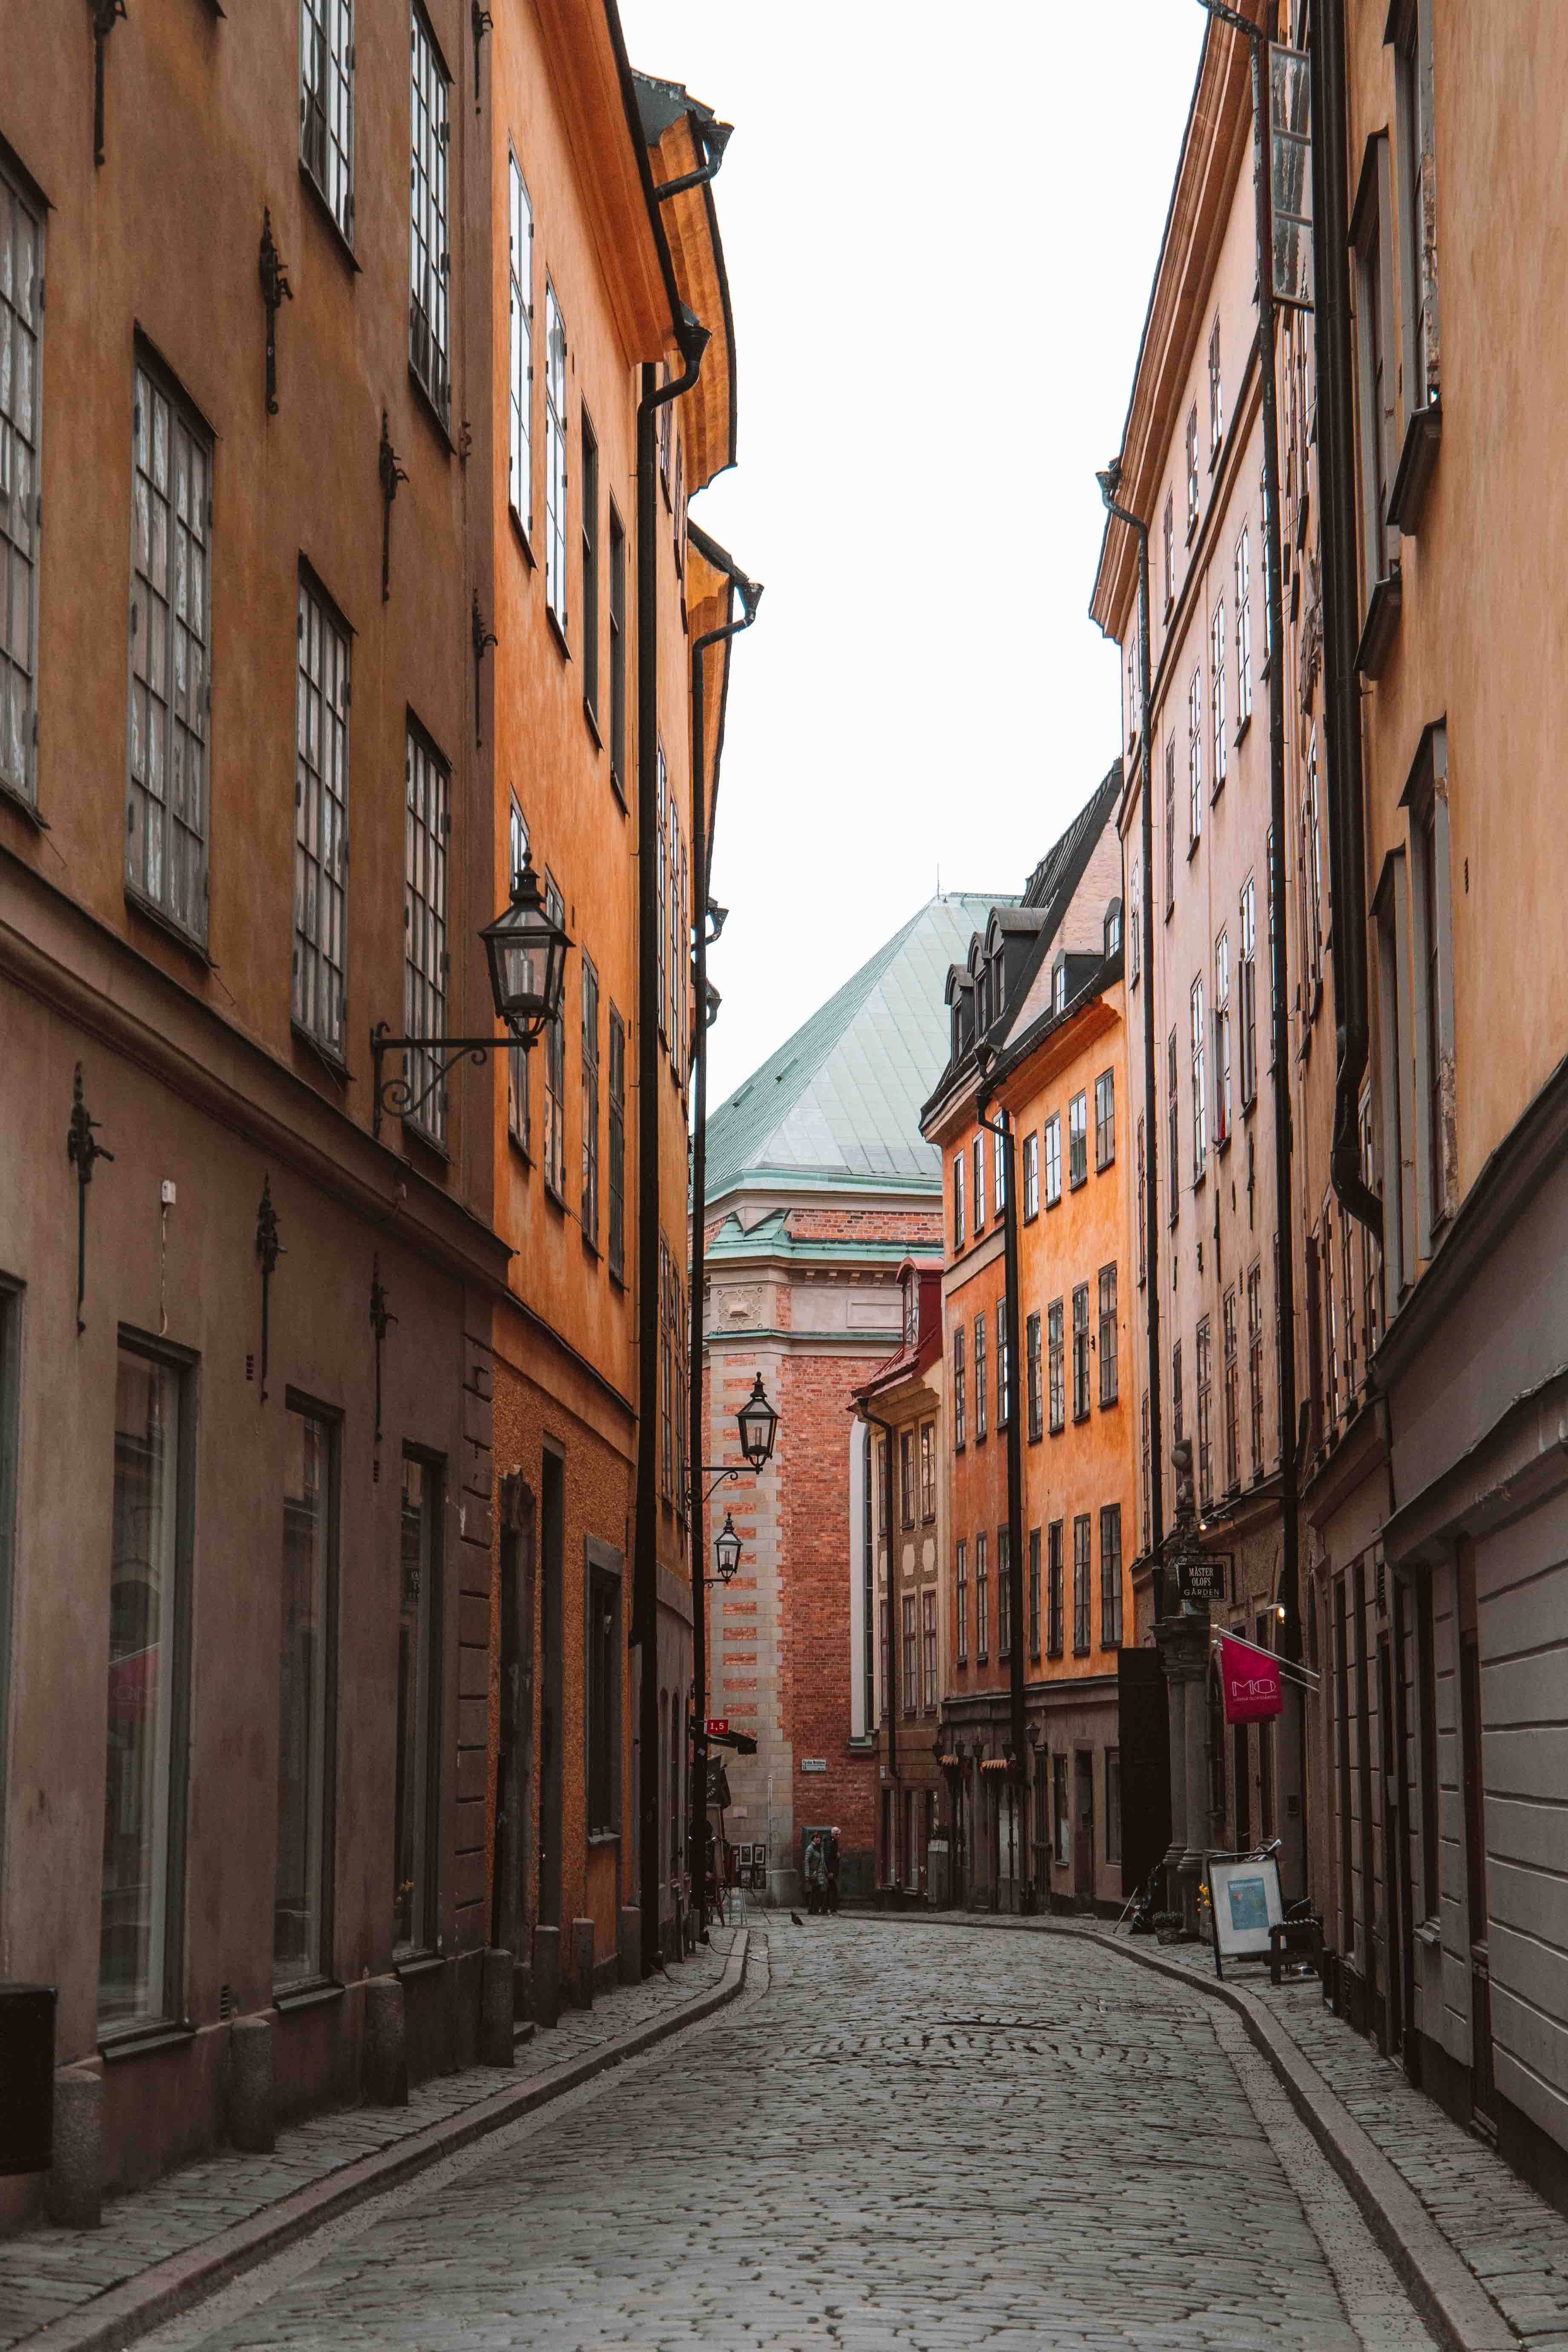 visit stockholm in 3 days